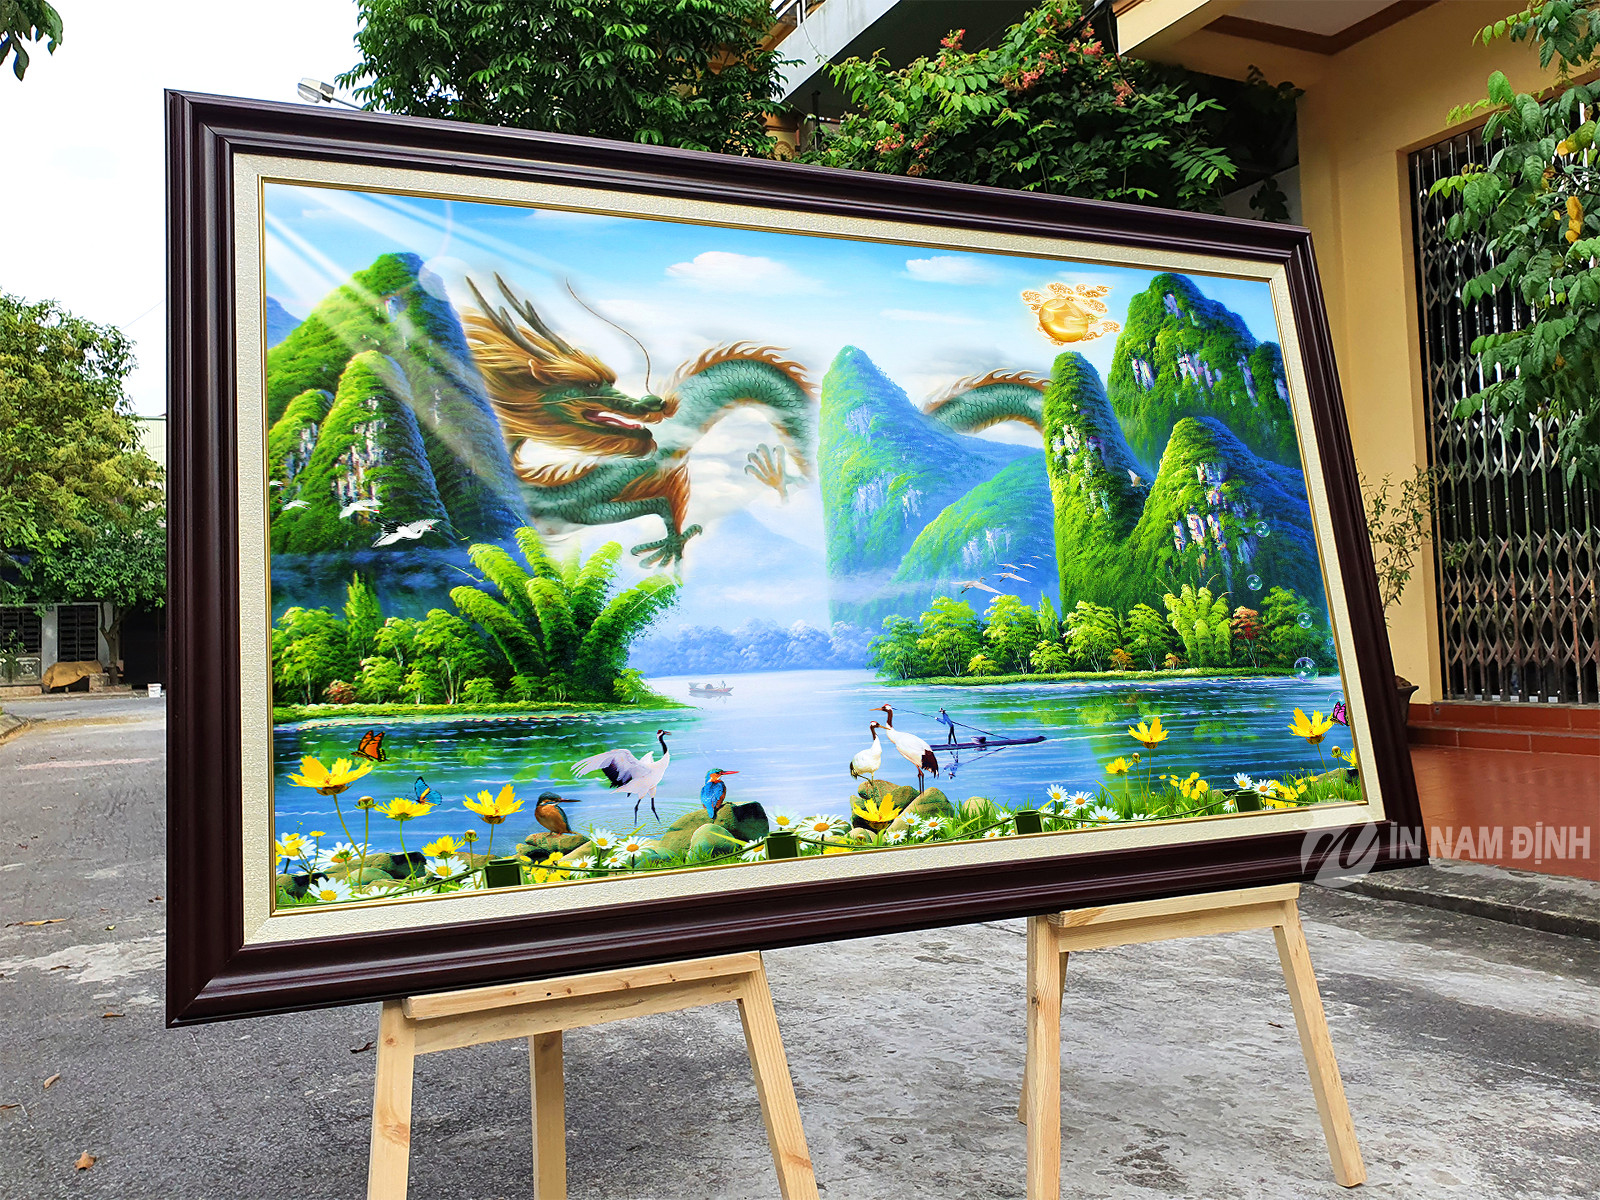 Những hấp dẫn của tranh treo tường Nam Định khiến nhiều người yêu thích lựa chọn